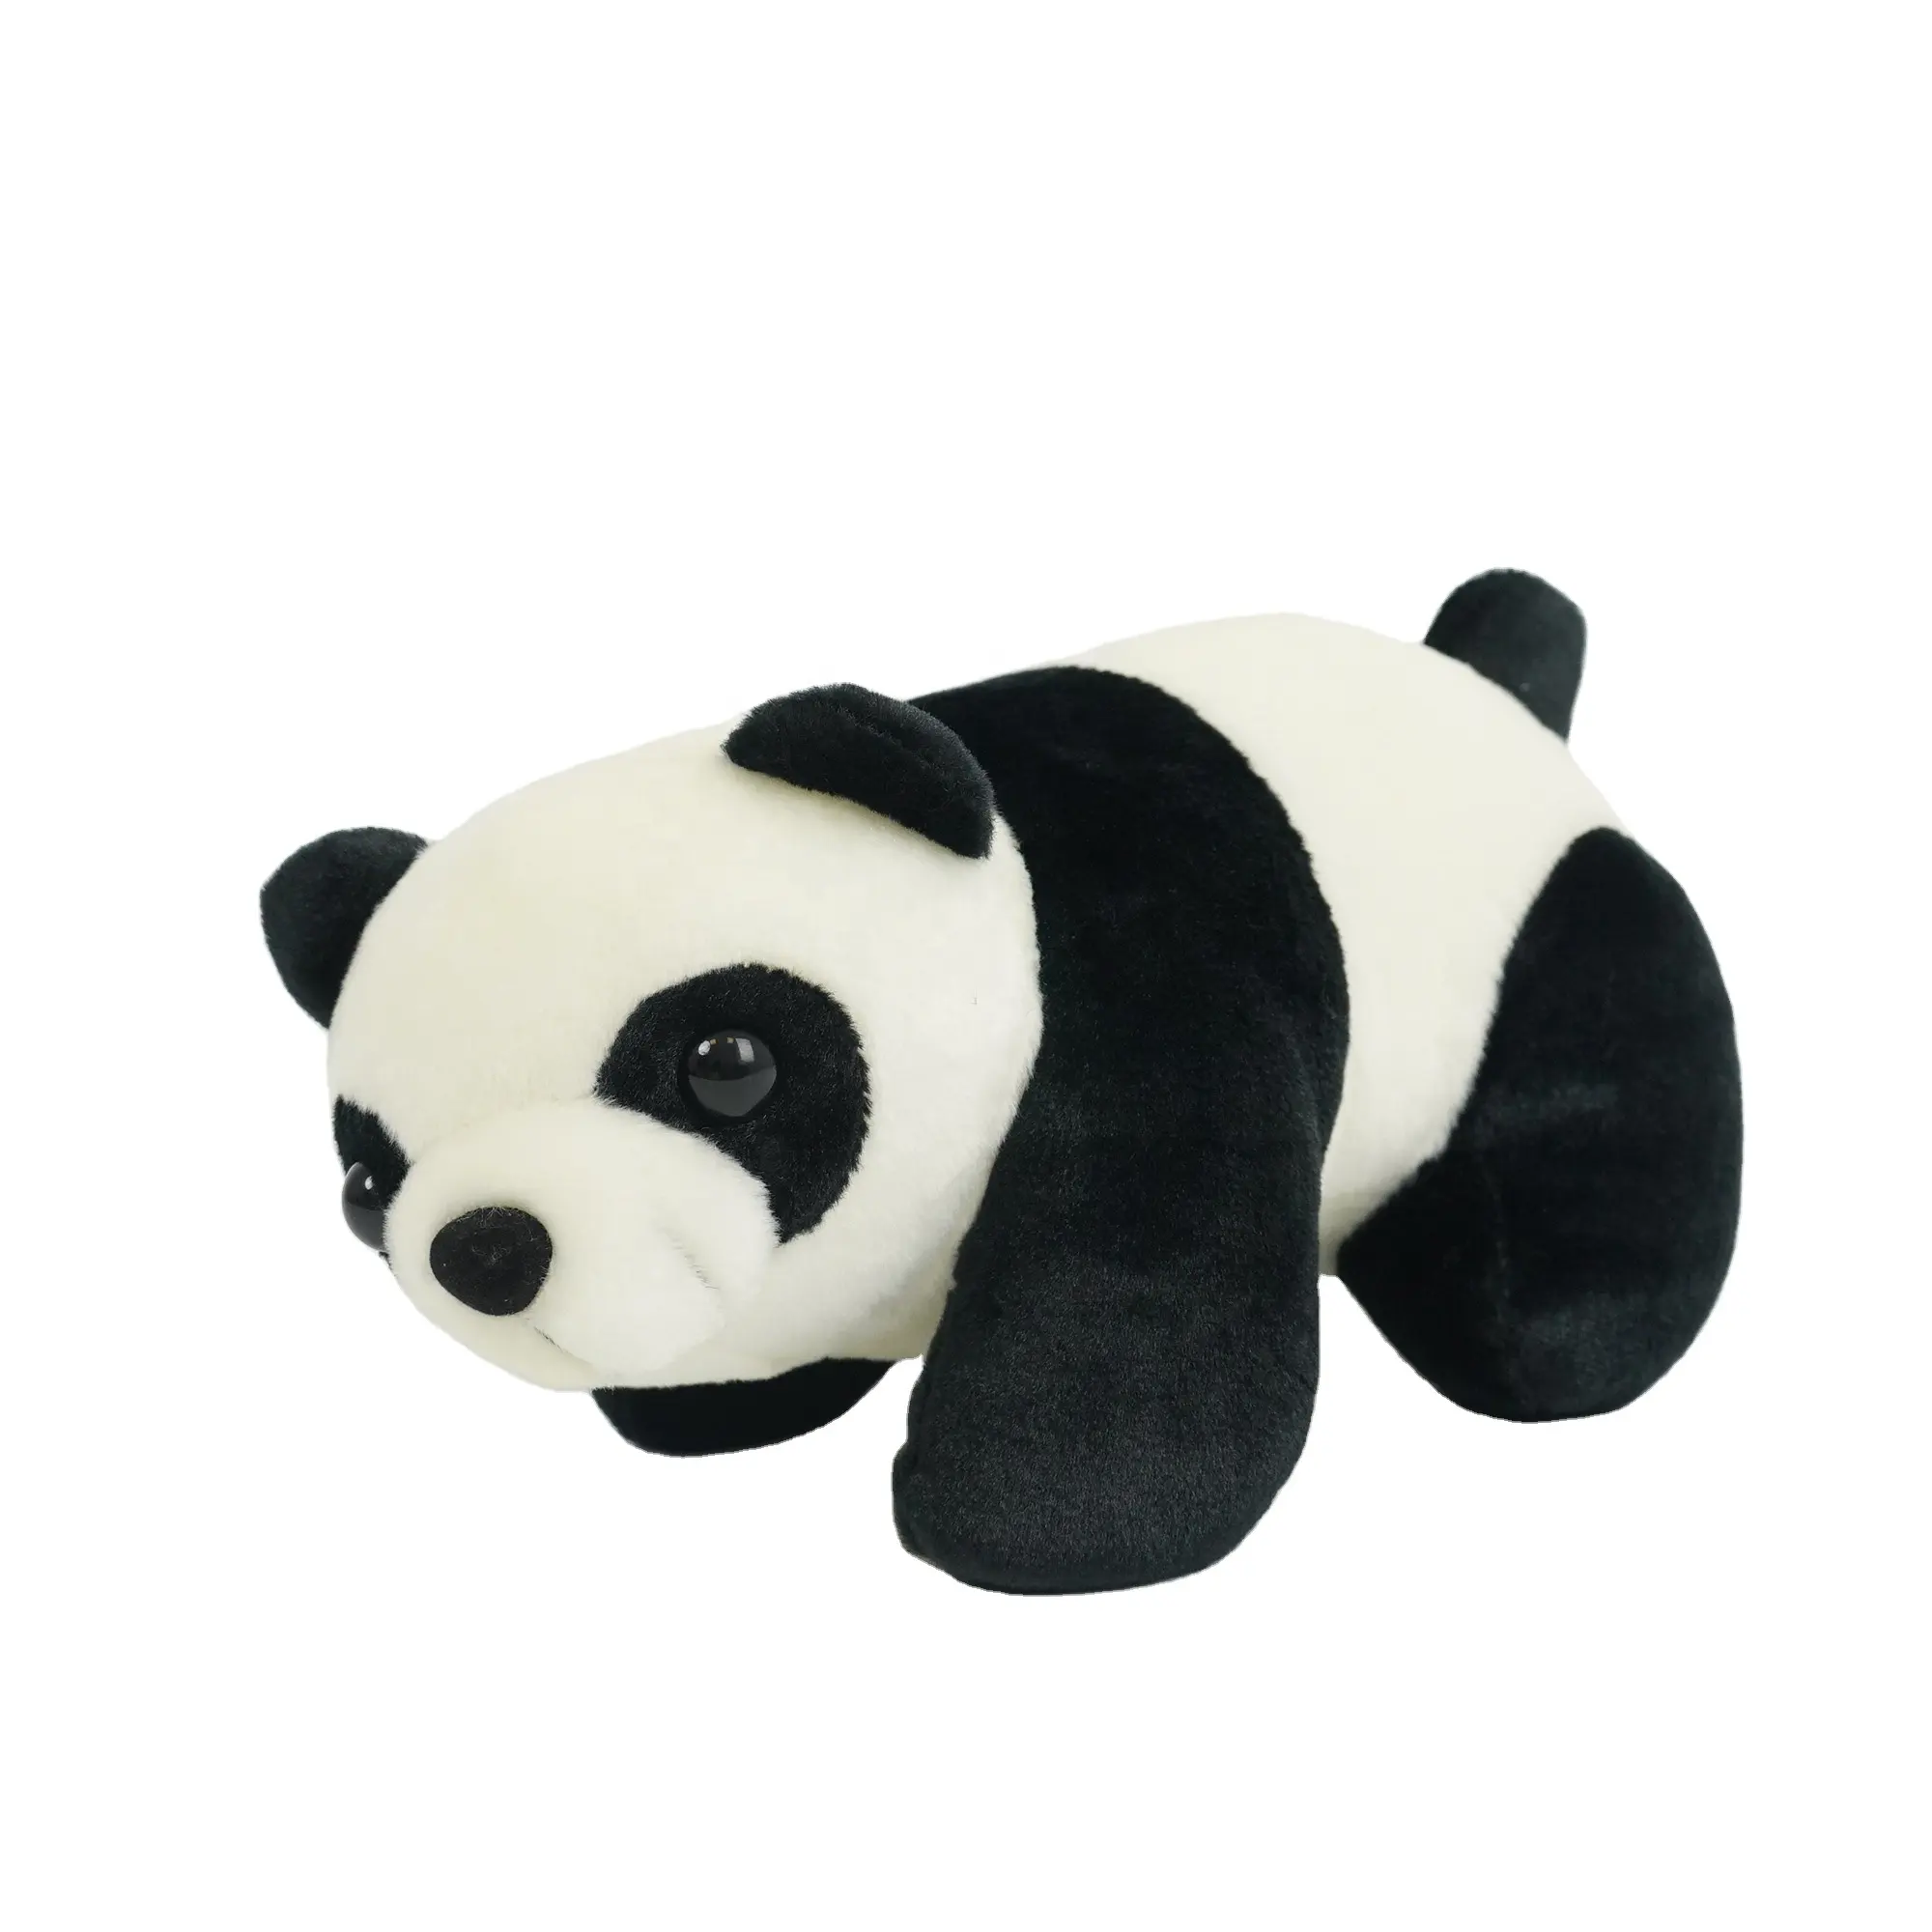 Diskon Besar Boneka Hewan Panda Klasik Mainan Lembut Putih dan Hitam